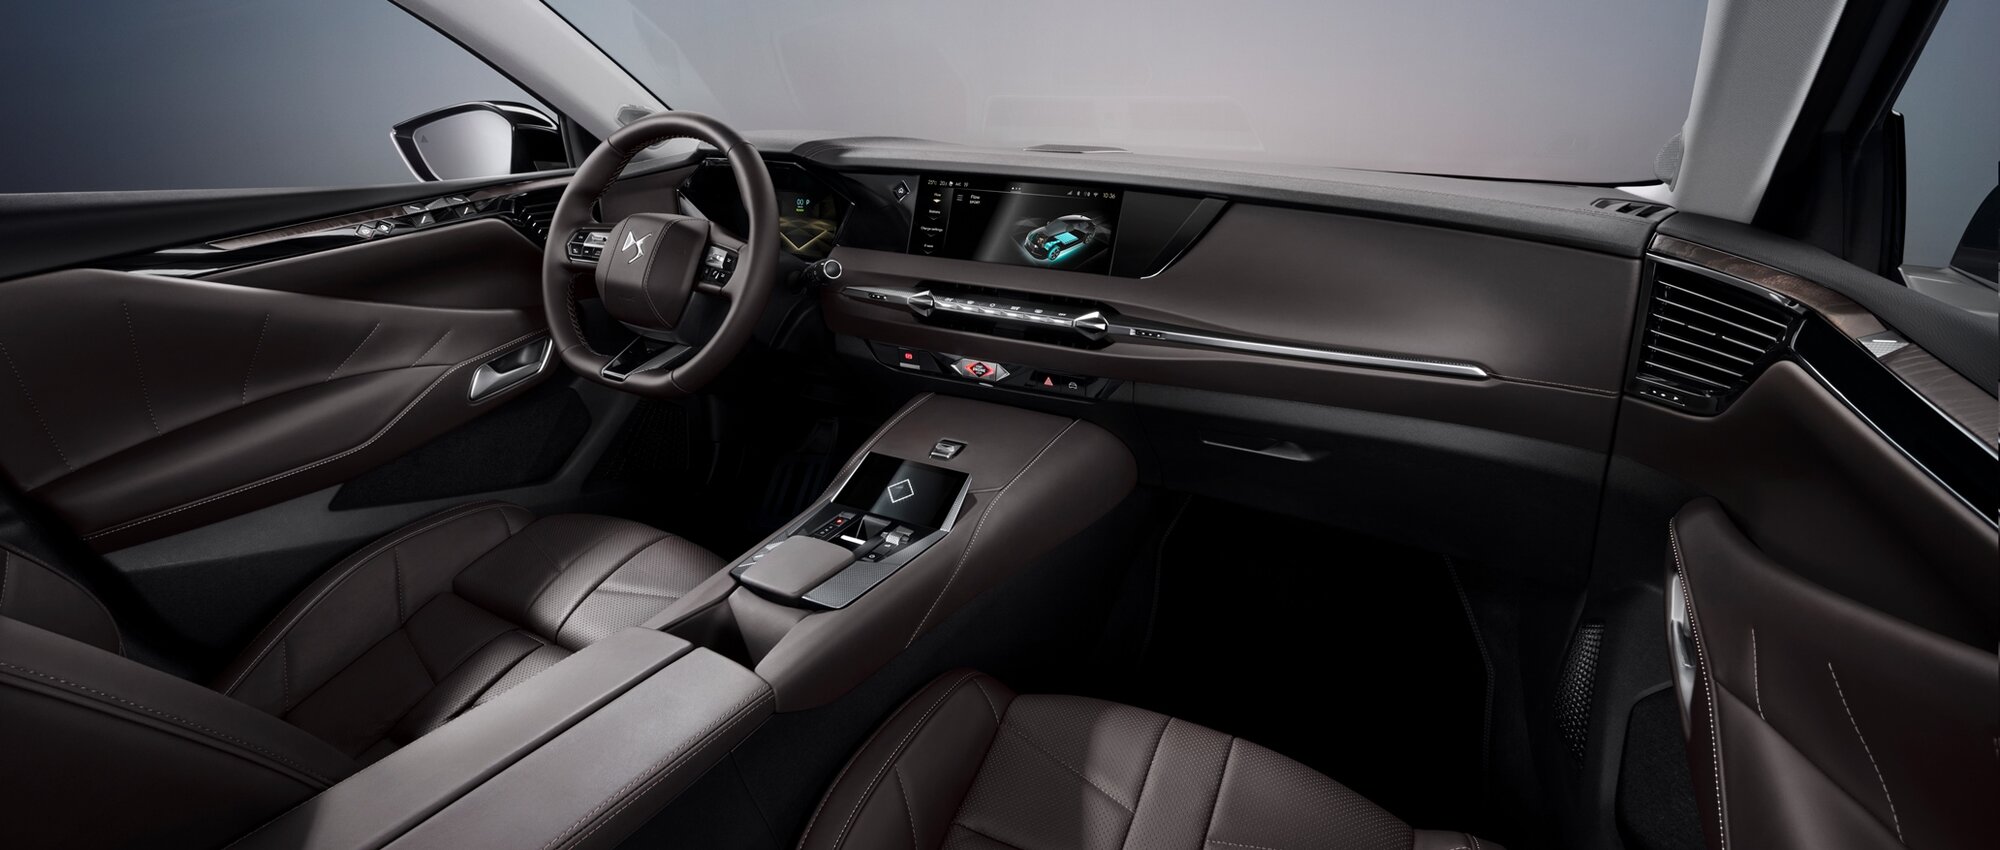 Interiér vozu DS 4 je digitální, ladný a ergonomický